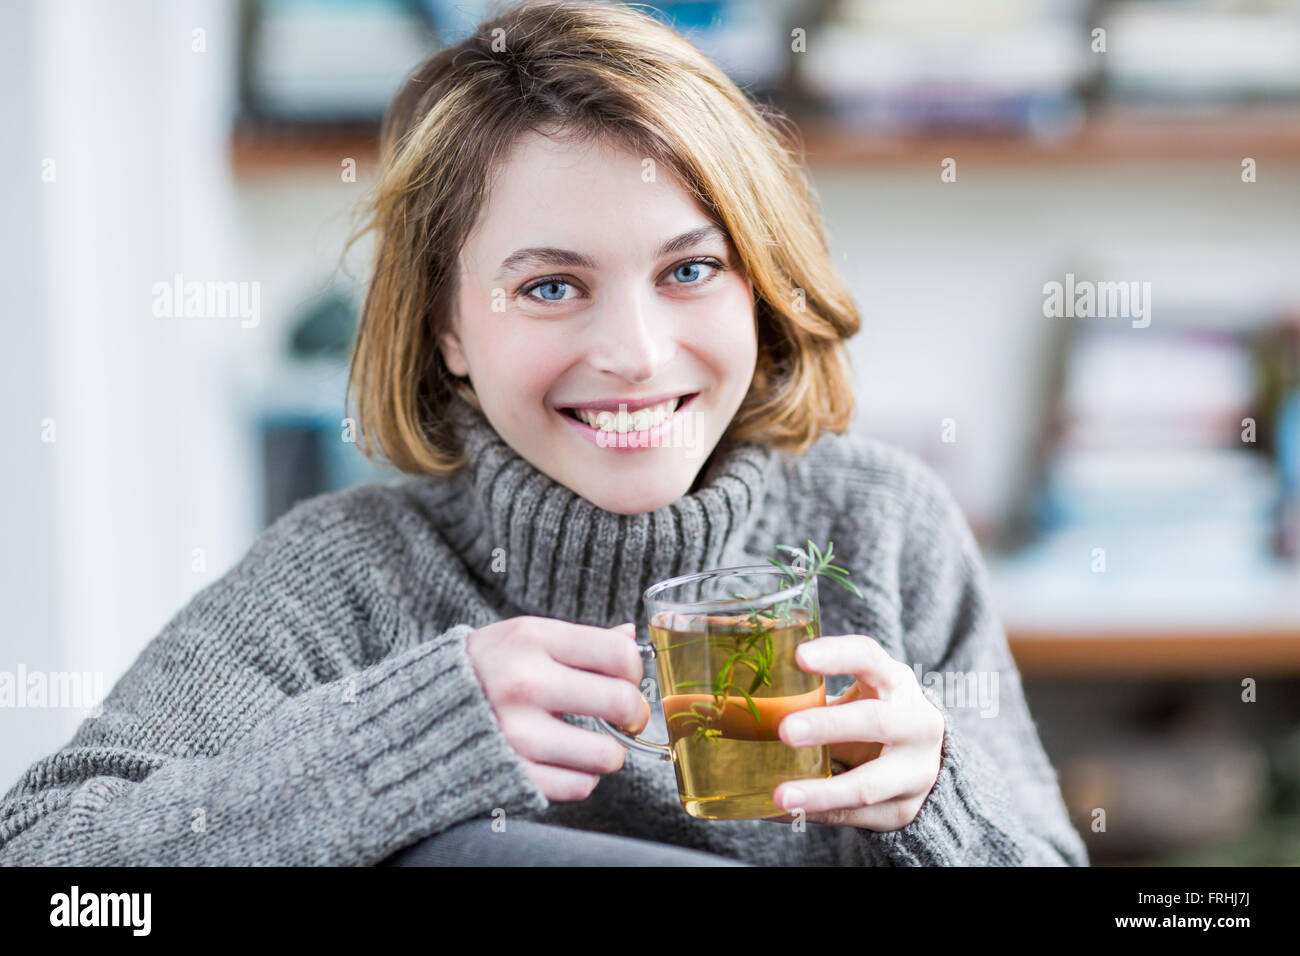 Woman drinking rosemary tea. Stock Photo